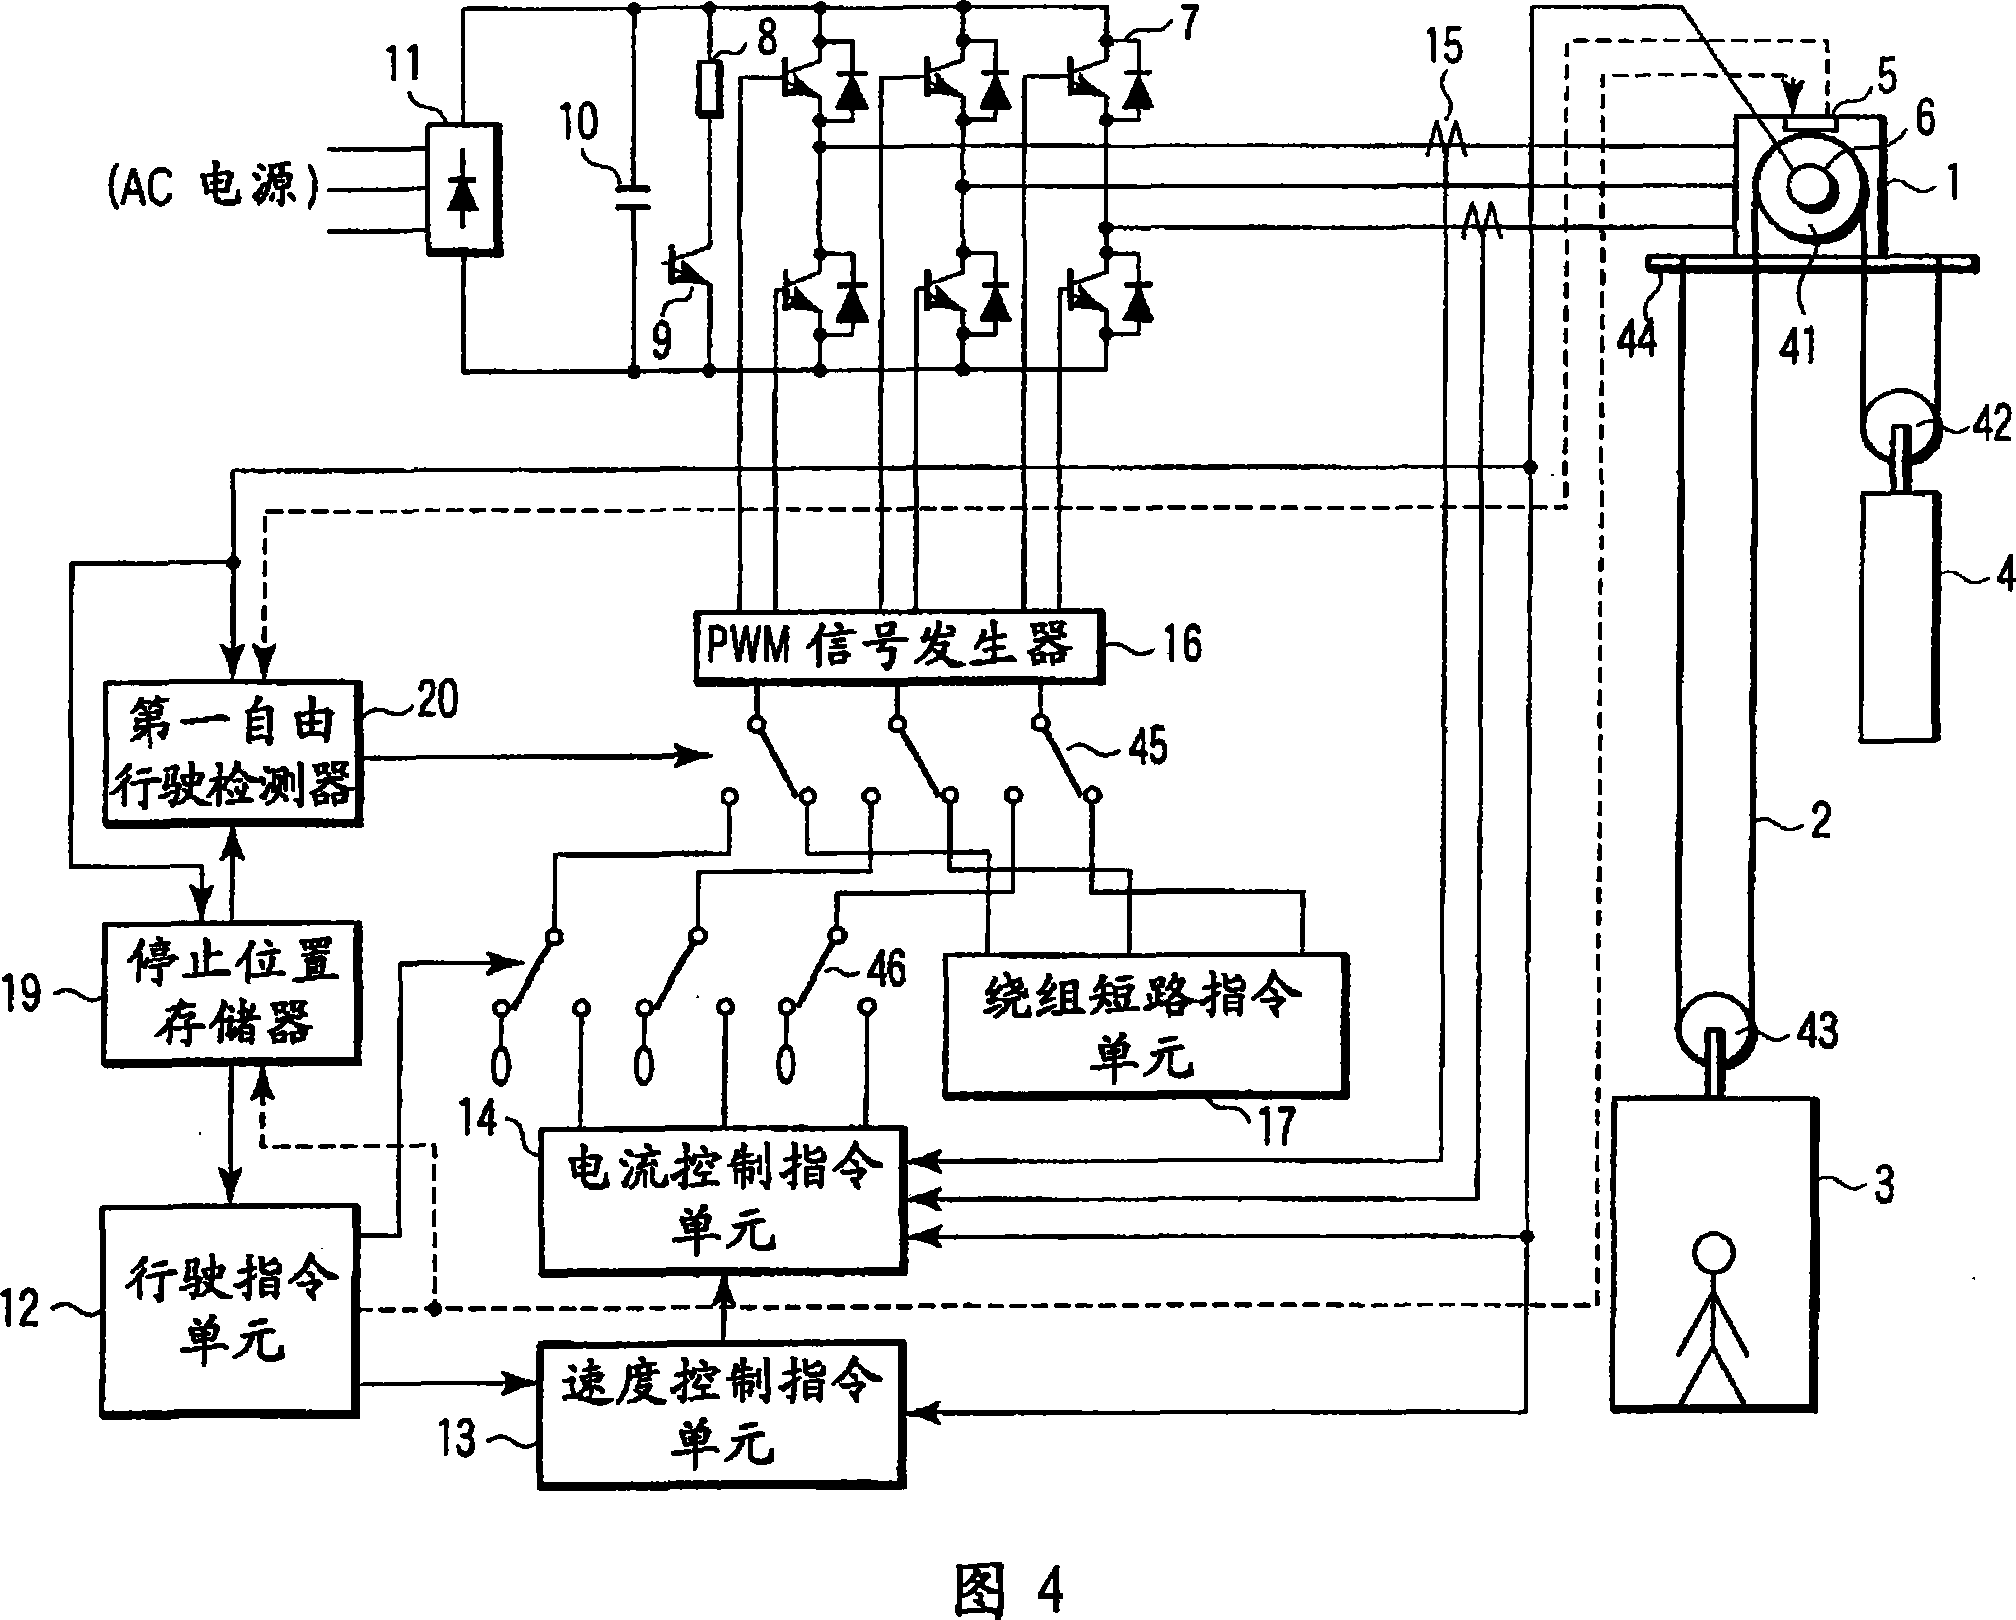 Elevator control apparatus